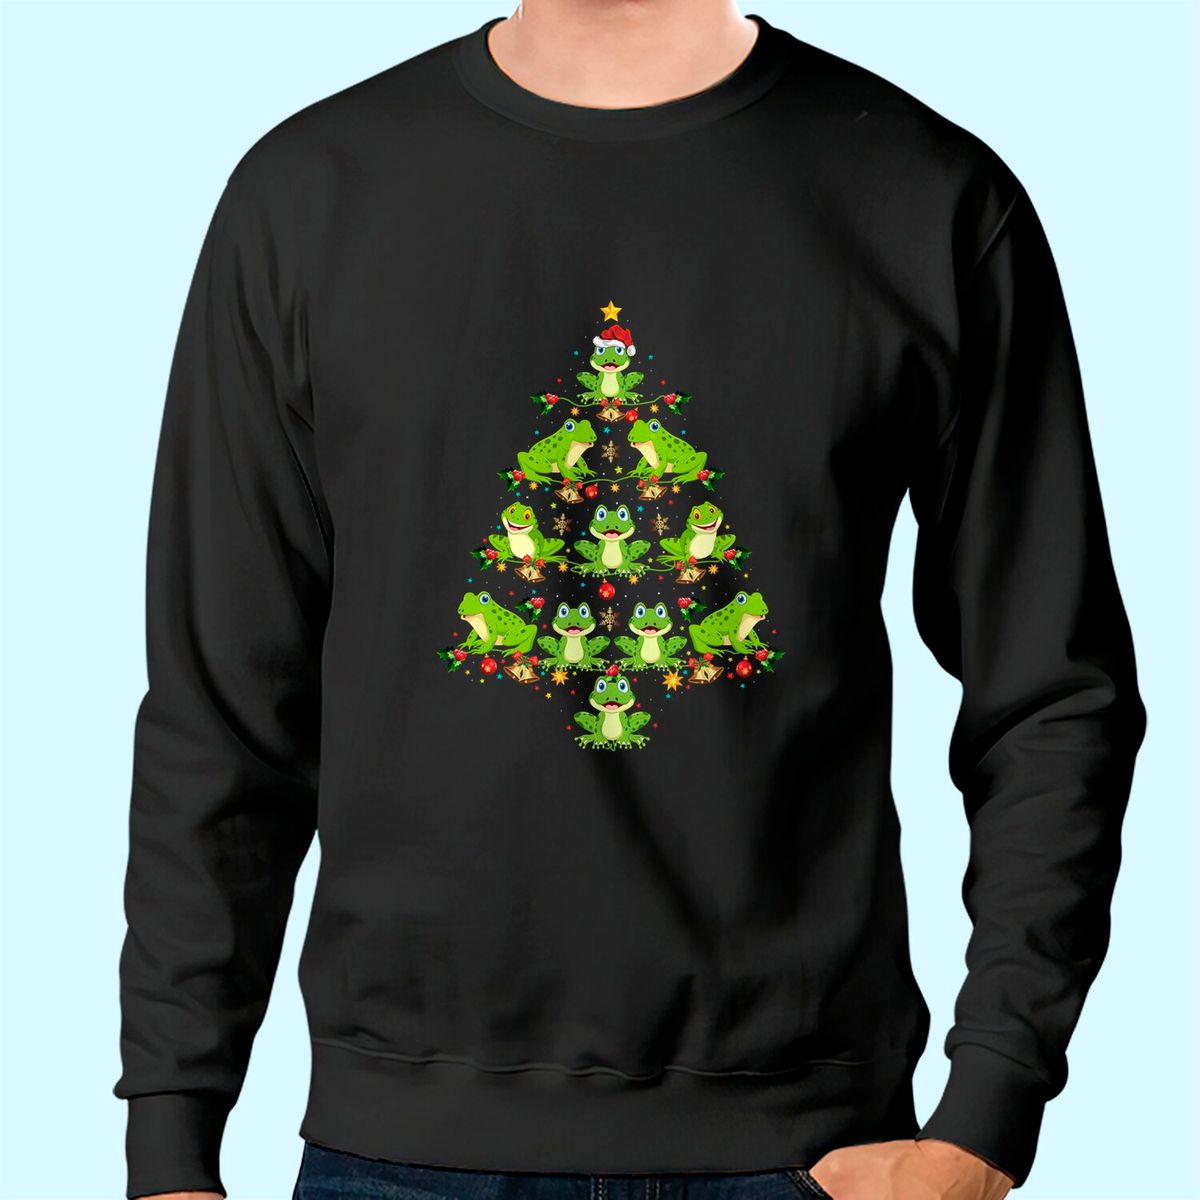 search?q=christmas+sweatshirts